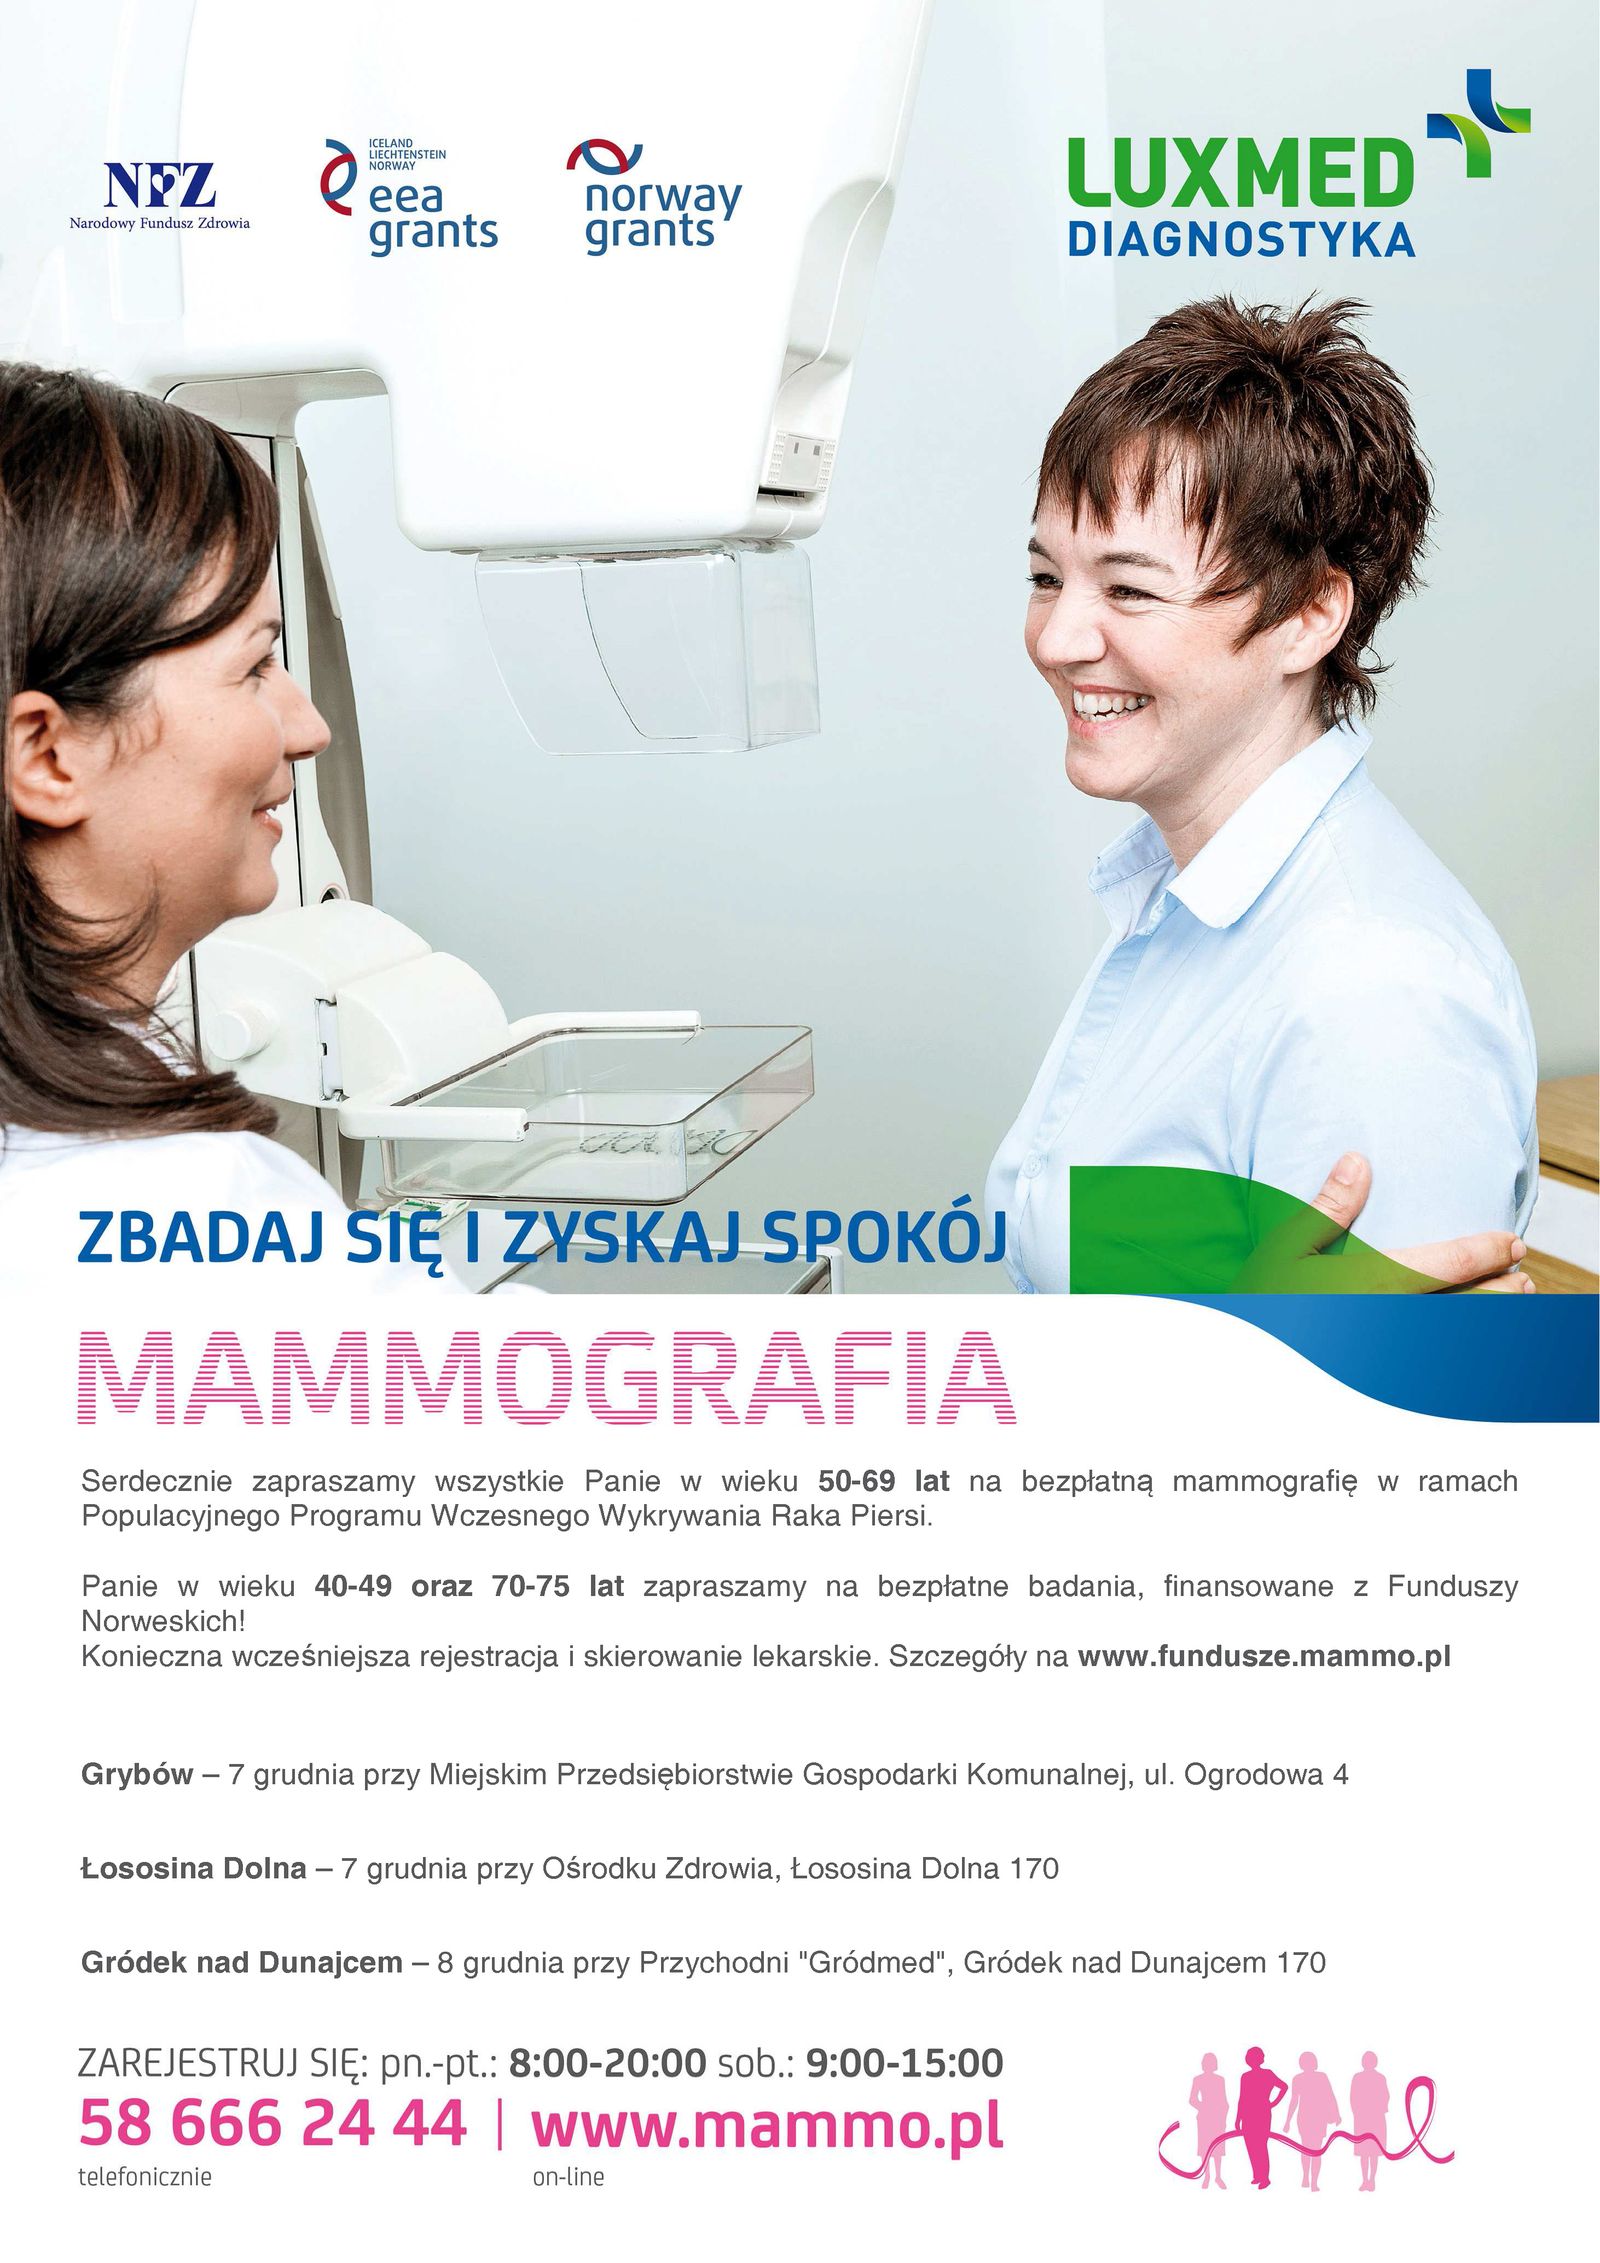 LUXMED - badanie mammograficzne